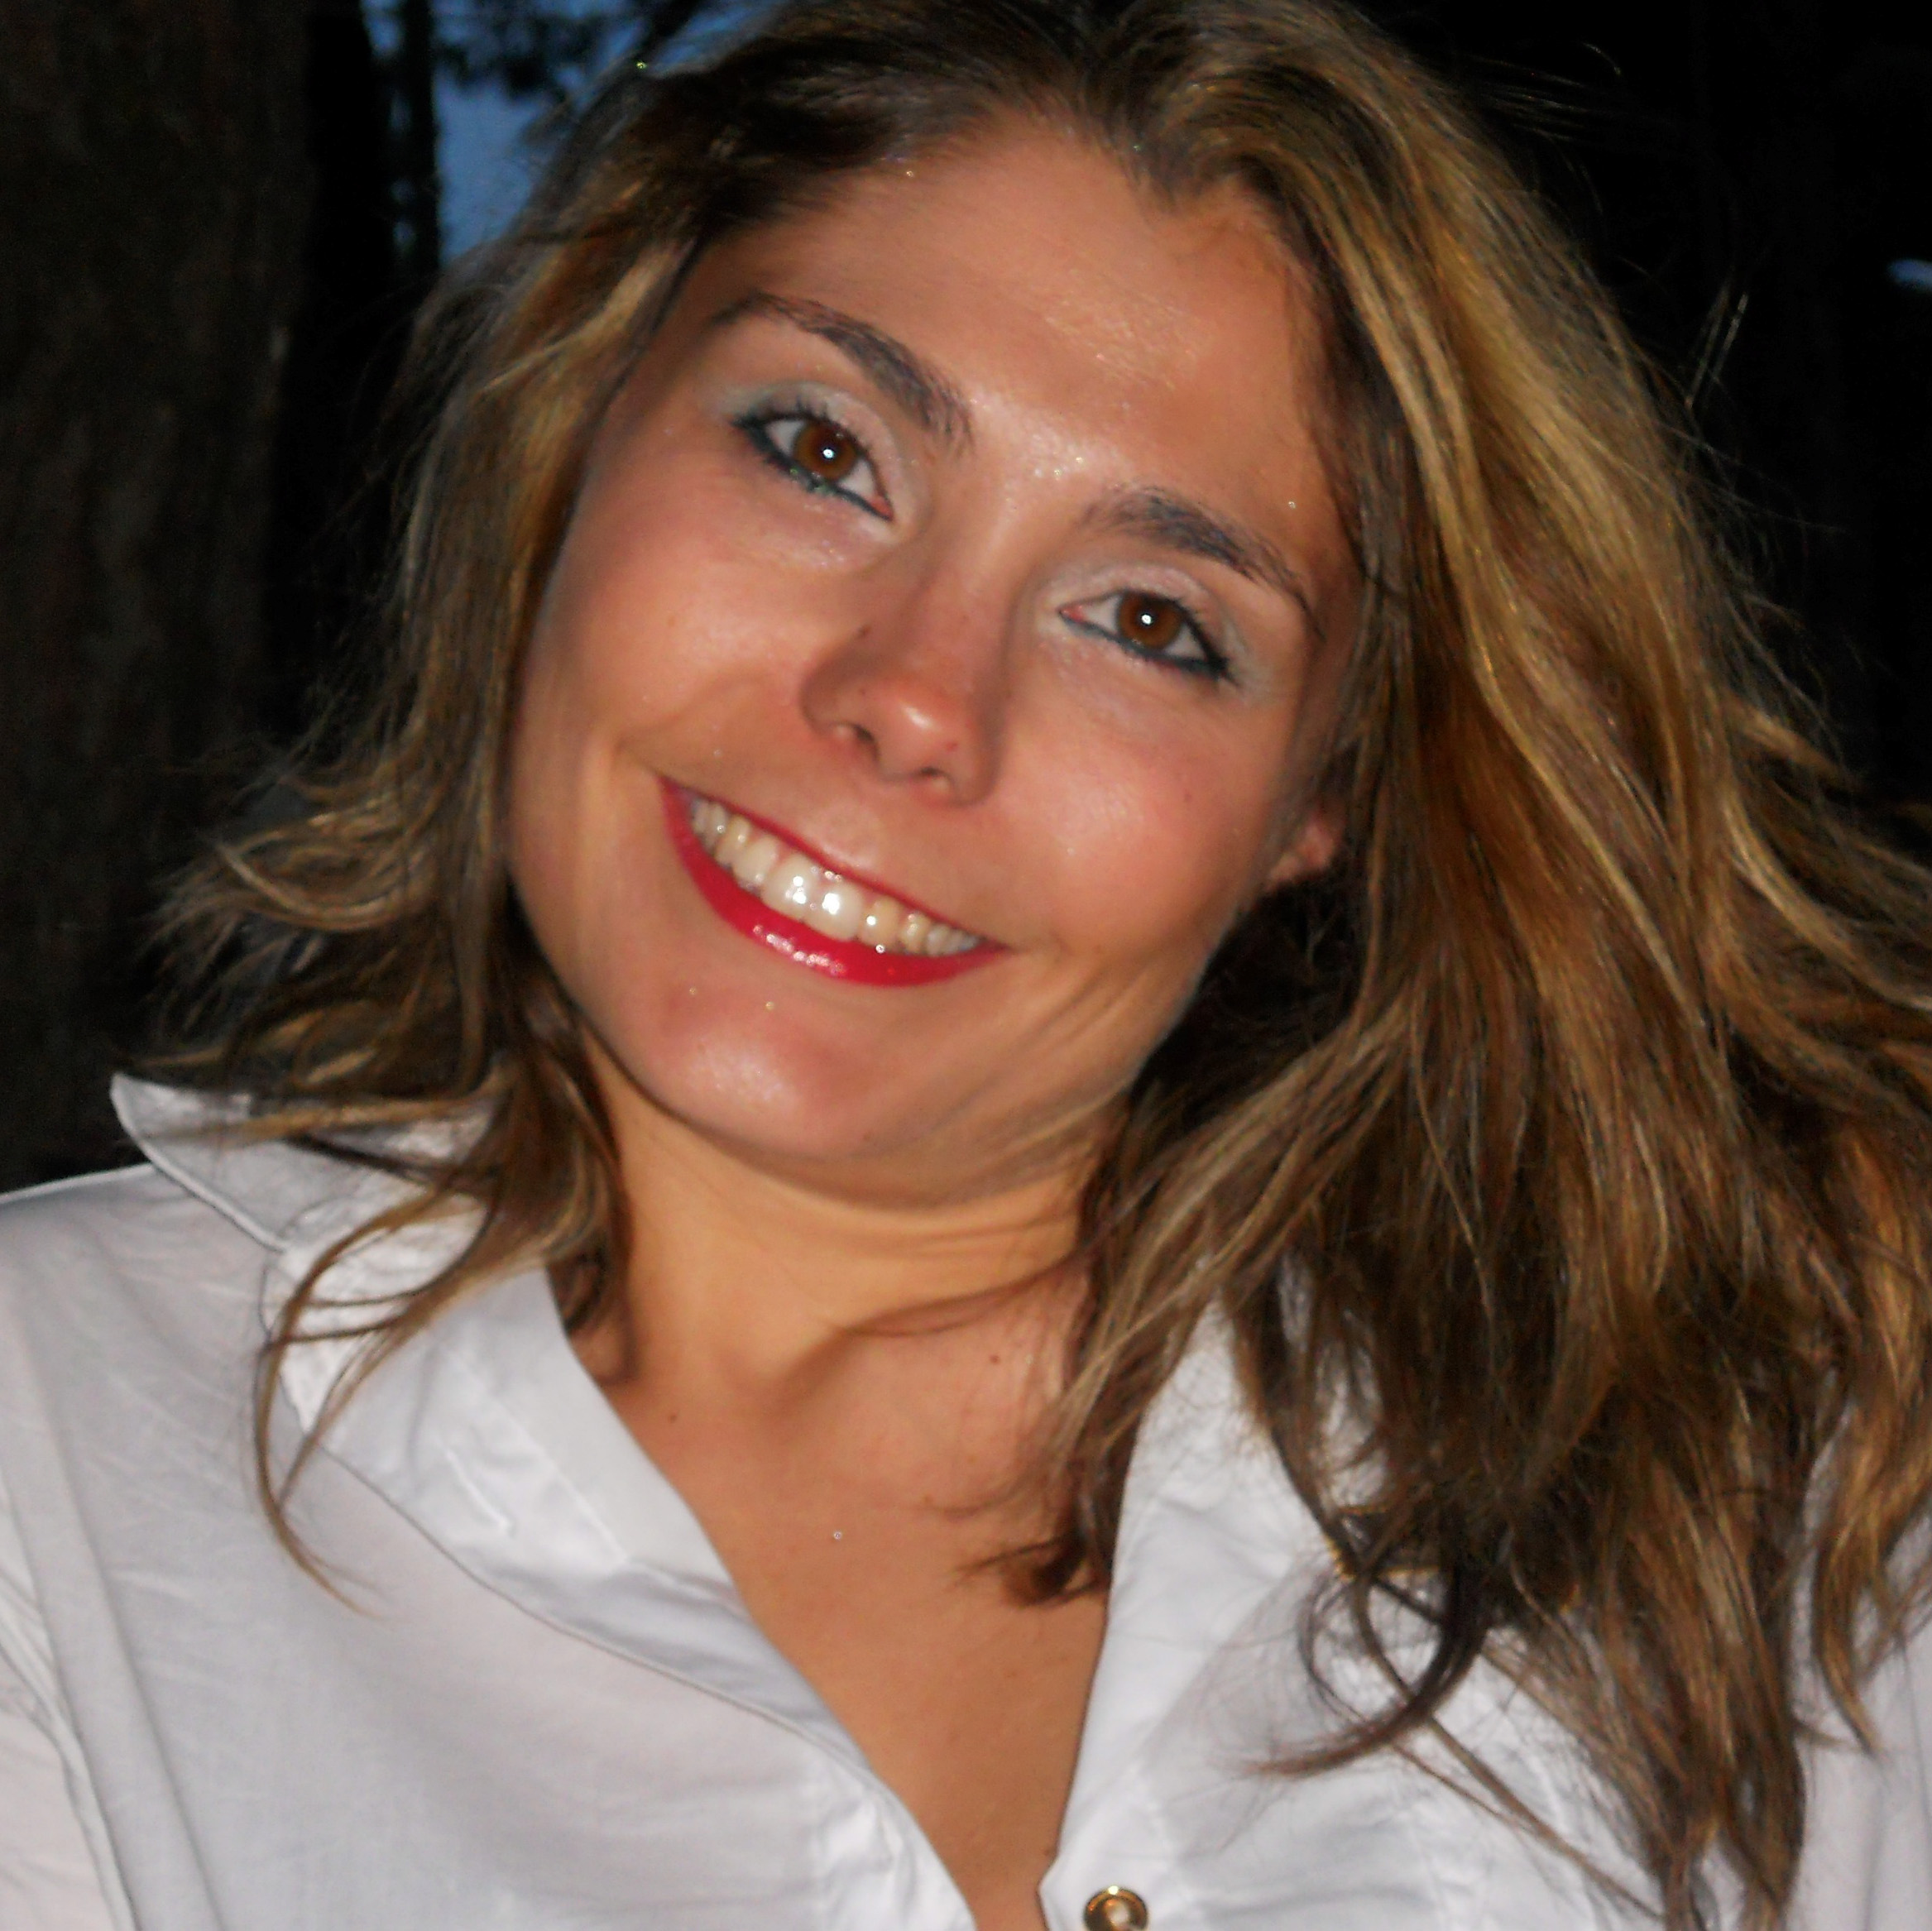 Silvia Rossi